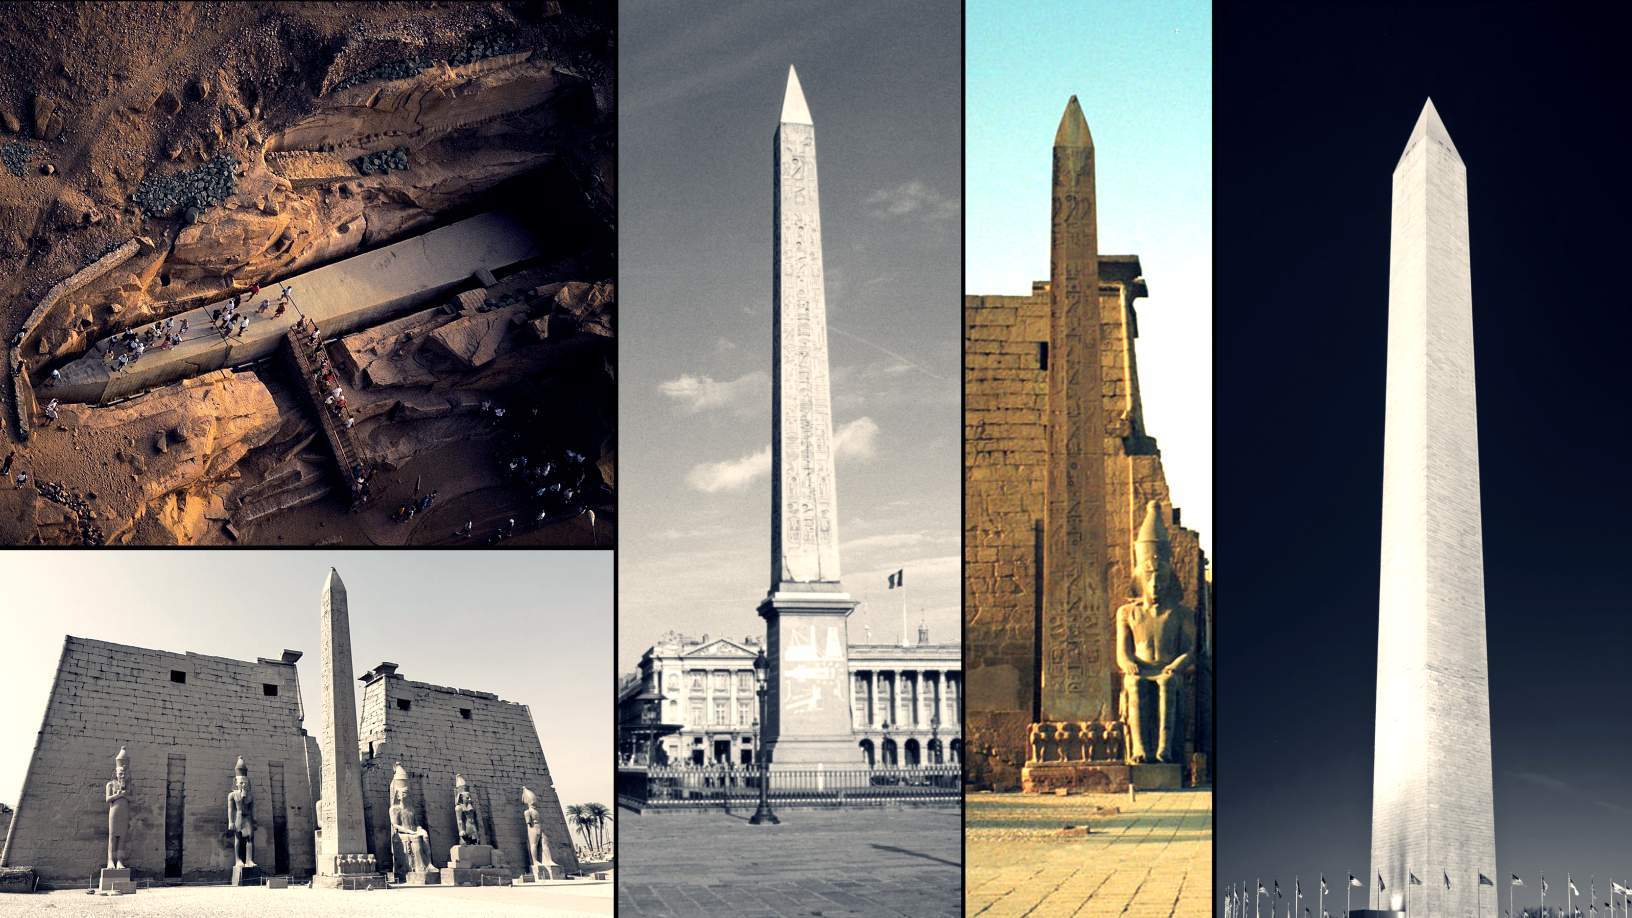 Fakta om obelisker